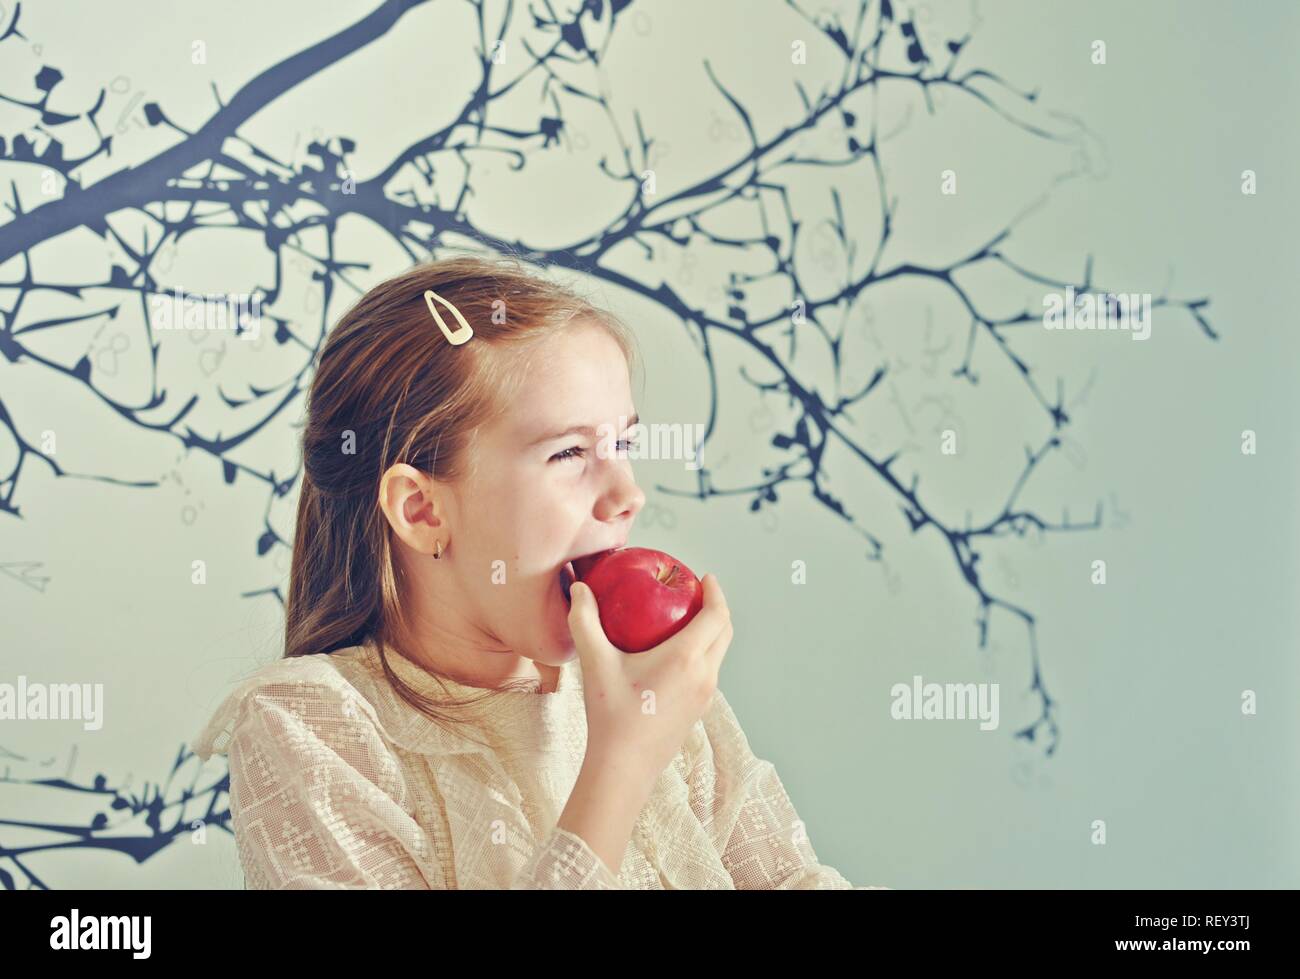 Portrait de profil d'un white Caucasian girl (enfant, kid) manger une pomme rouge. Copier du texte Banque D'Images